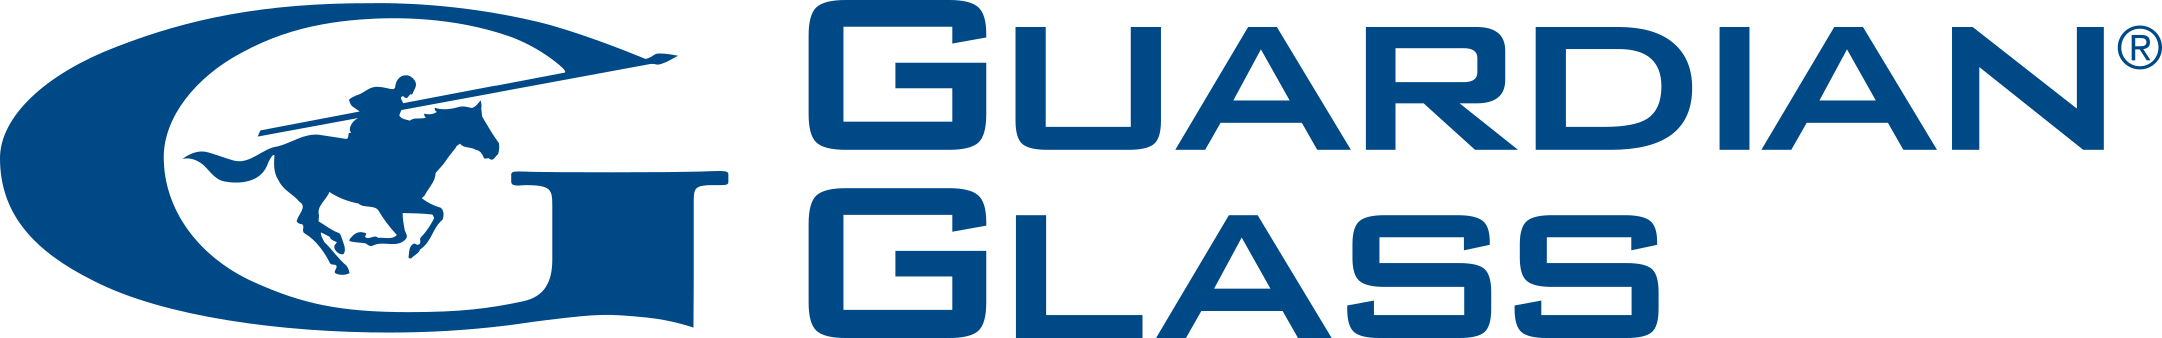 guardian glass logo 1 - Guardian Glass Logo